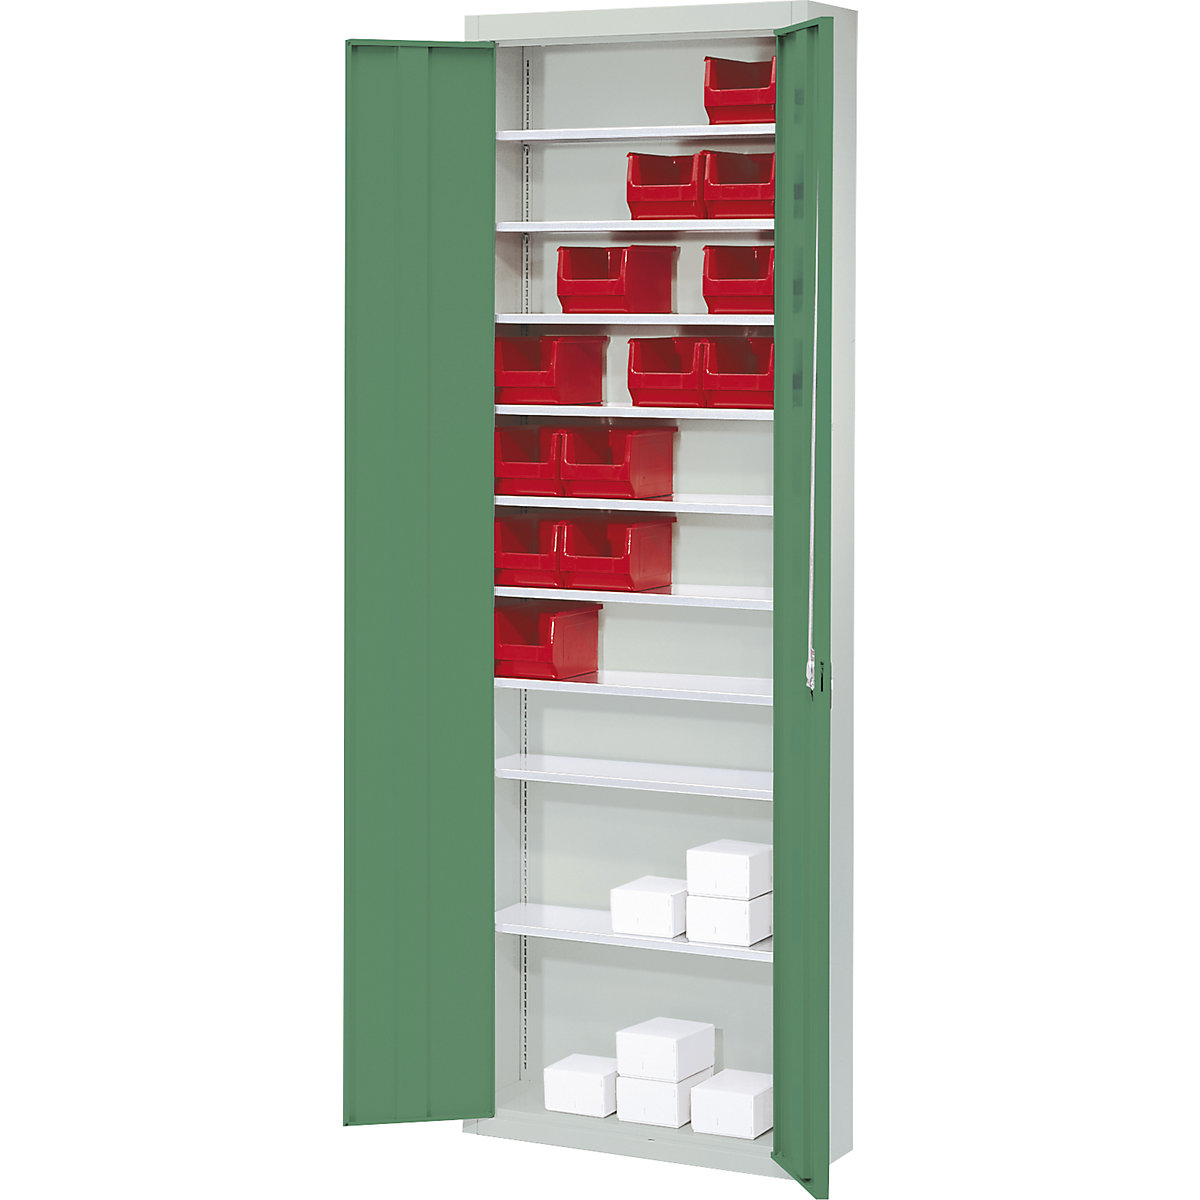 Rekesztároló szekrény, nyitott tárolódobozok nélkül – mauser, ma x szé x mé 2150 x 680 x 280 mm, kétszínű, szürke váz, zöld ajtó-4